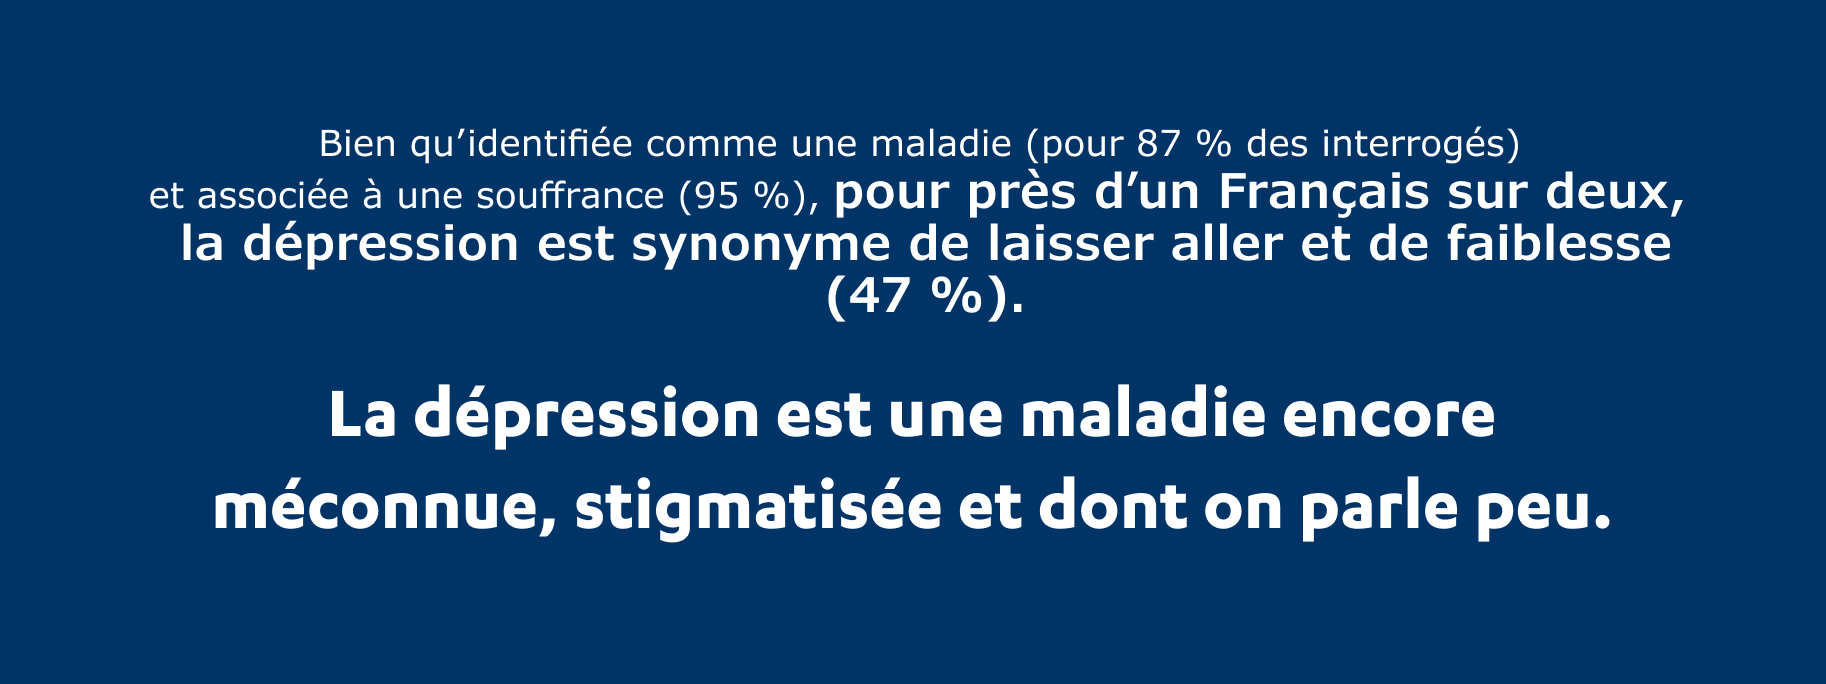 Pour près d'un Français sur deux, la dépression est synonyme de laisser aller et de faiblesse (47 %). La dépression est une maladie encore méconnue, stigmatisée et dont on parle peu.